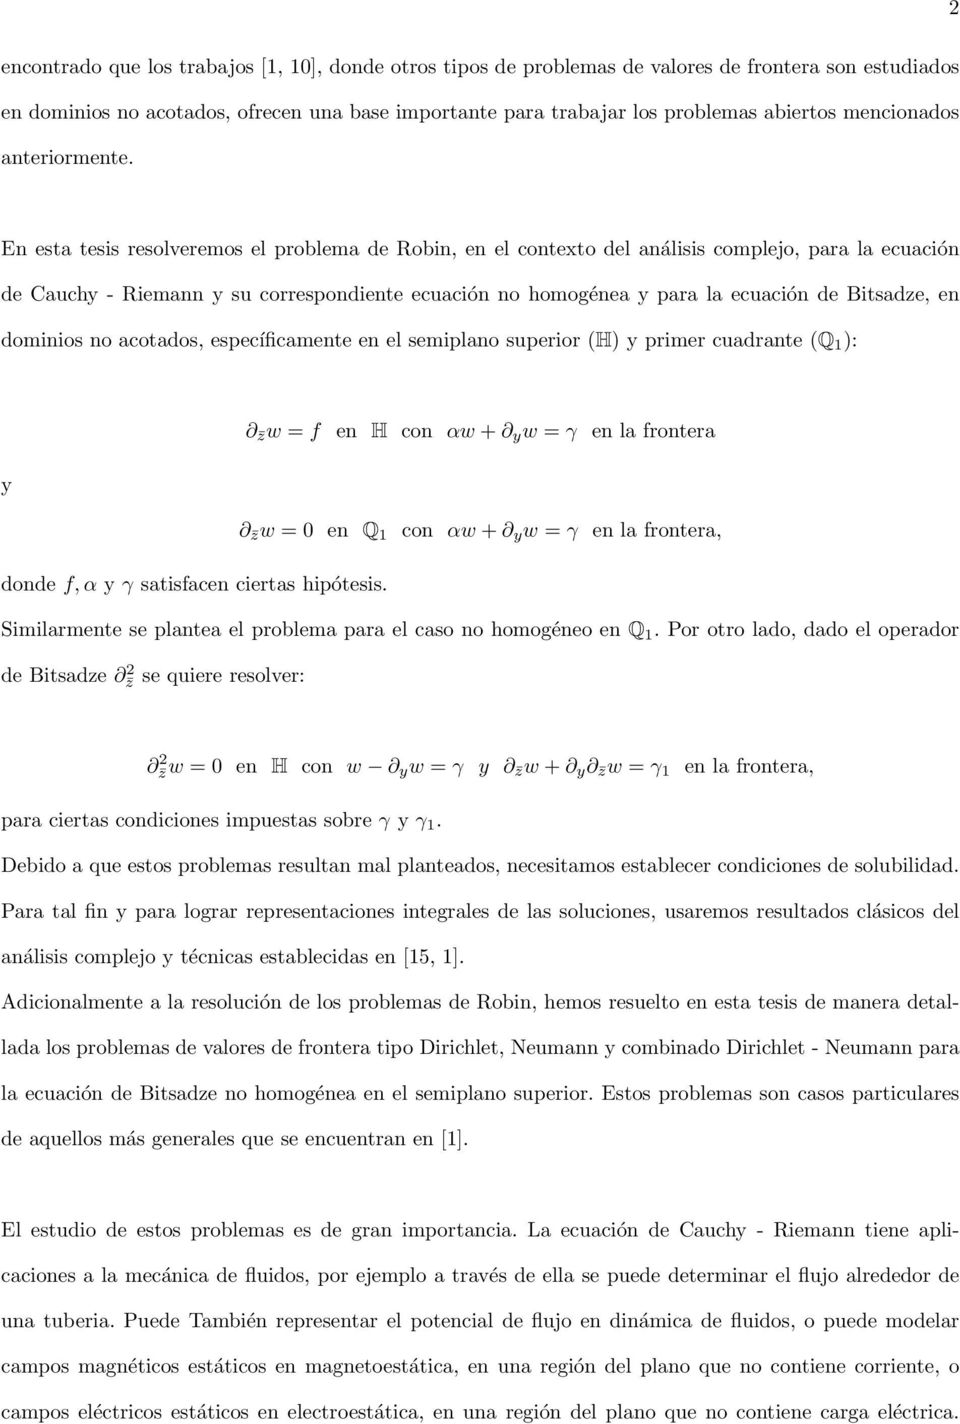 En esta tesis resolveremos el problema de obin, en el contexto del análisis complejo, para la ecuación de Cauch - iemann su correspondiente ecuación no homogénea para la ecuación de Bitsadze, en